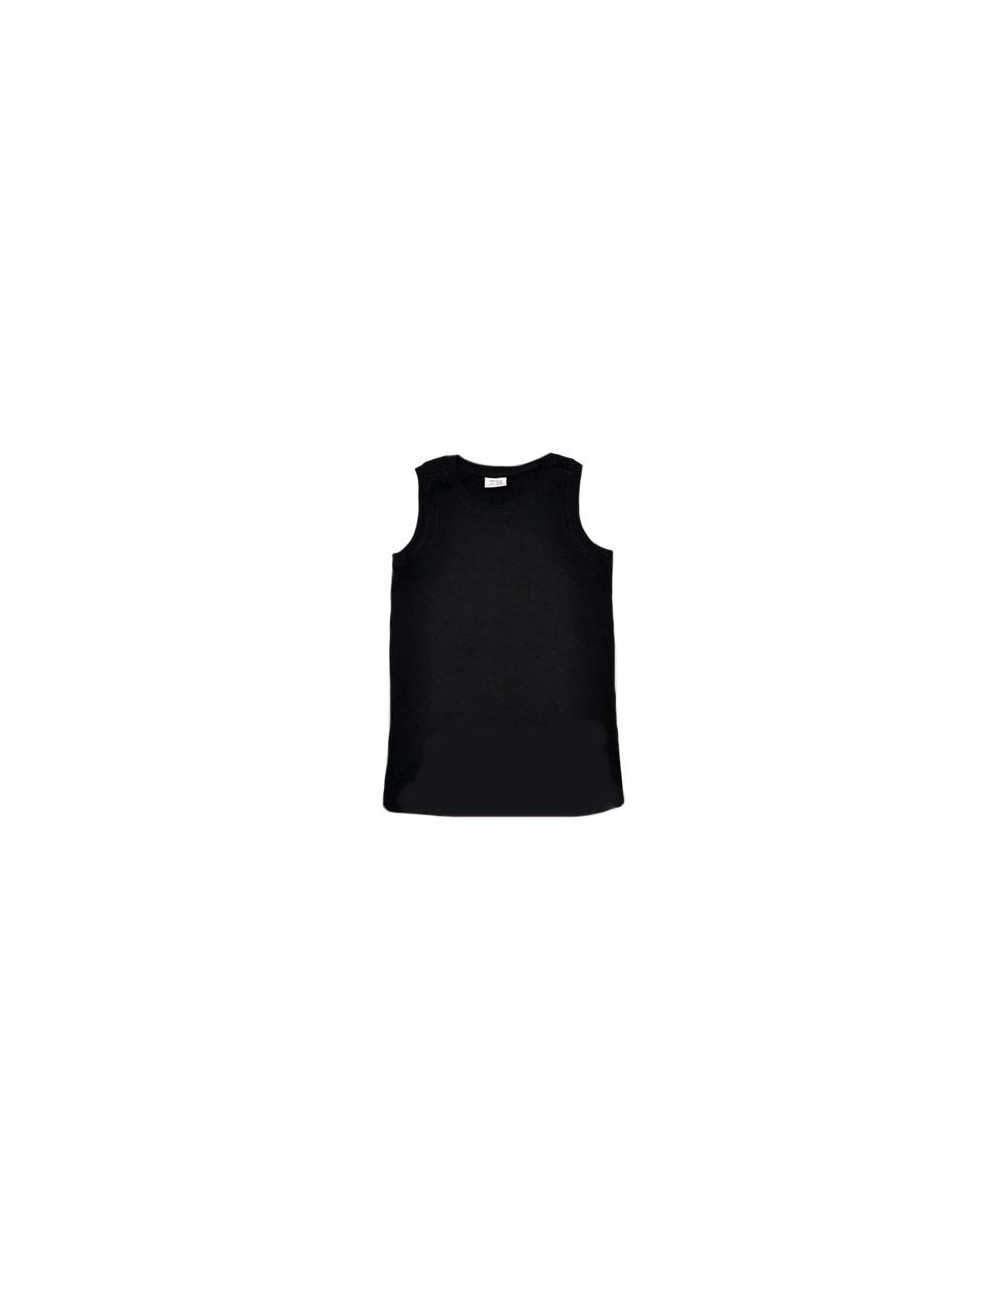 Tricouri Zara fara maneci, negru, pentru copii